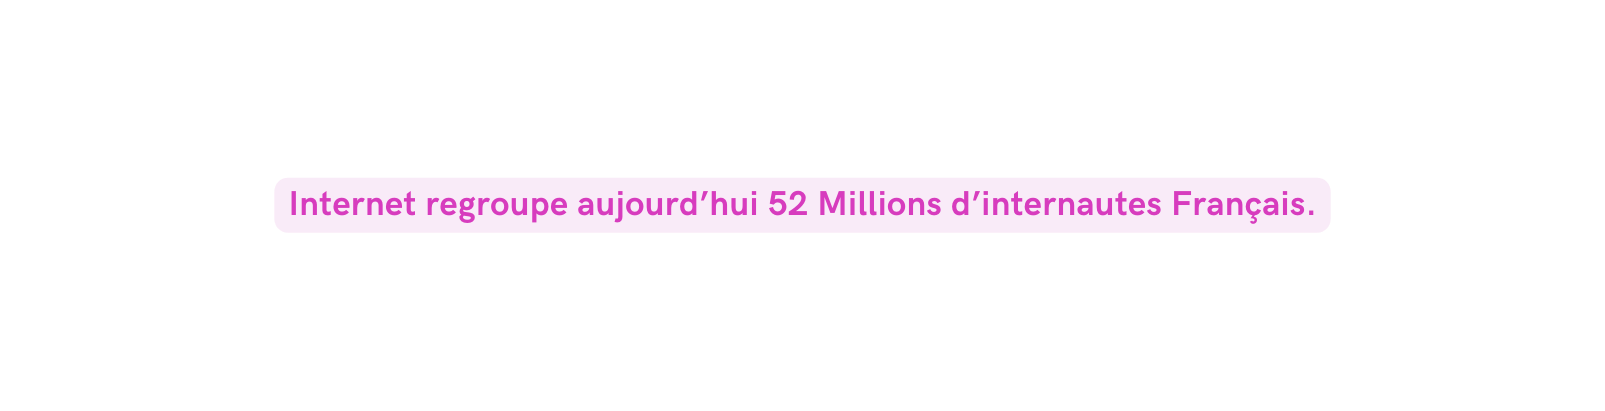 Internet regroupe aujourd hui 52 Millions d internautes Français